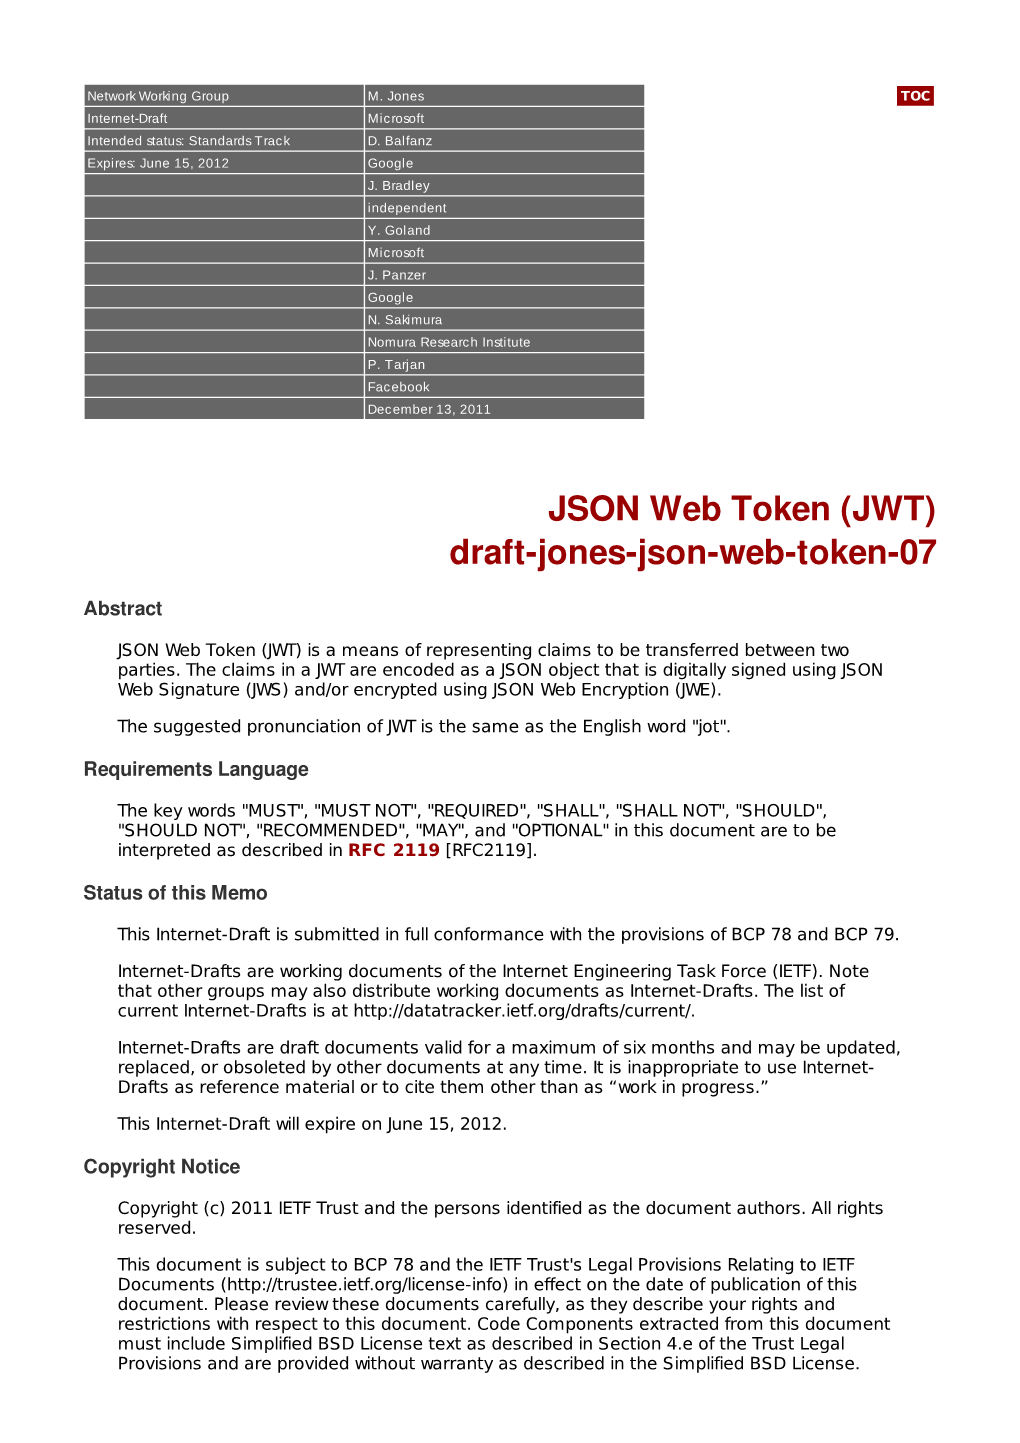 JSON Web Token (JWT) Draft-Jones-Json-Web-Token-07